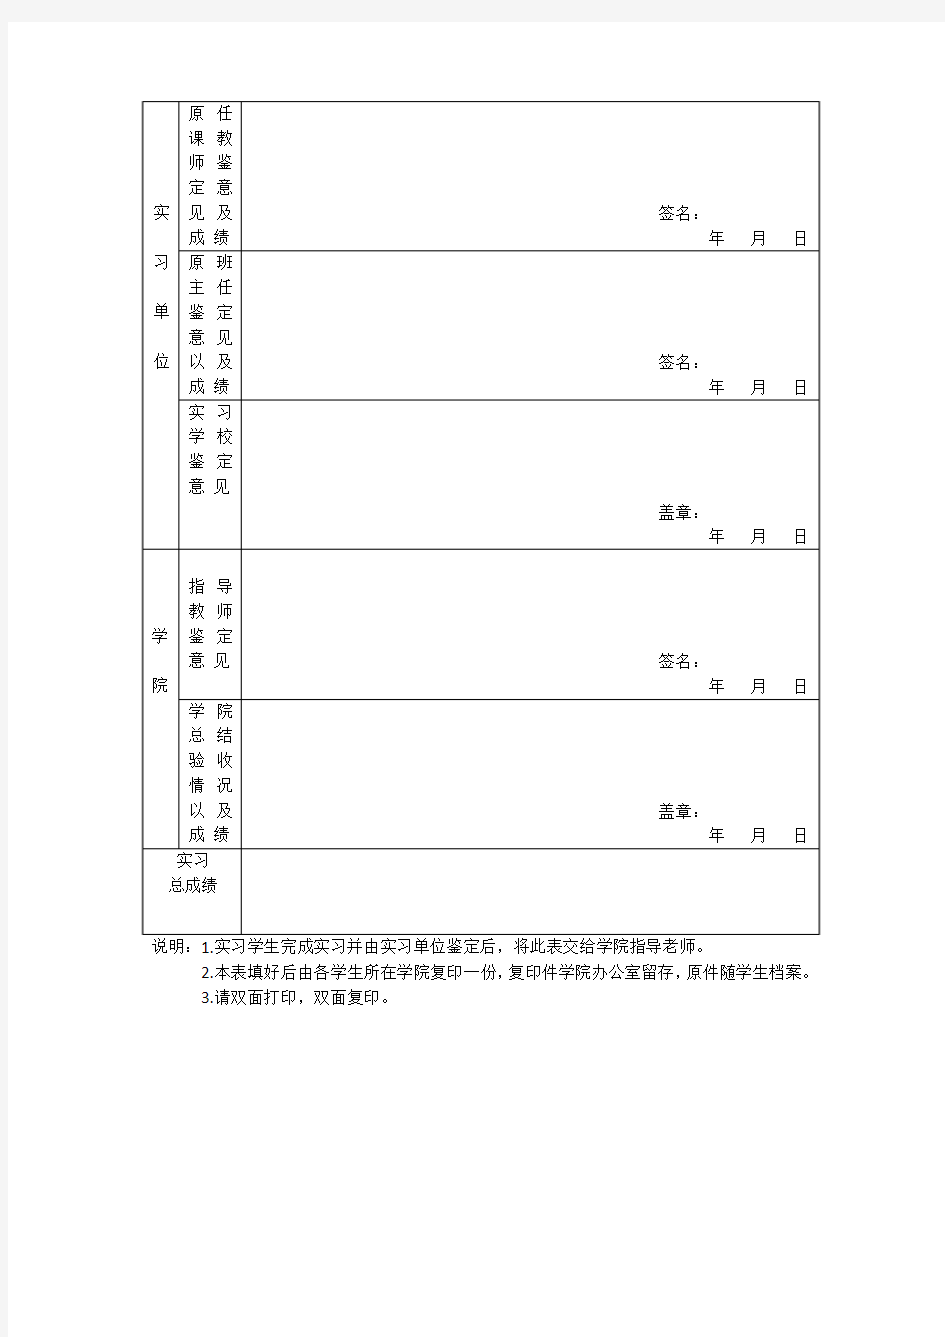 四川广播电视大学学生社会实践考核表 (1)